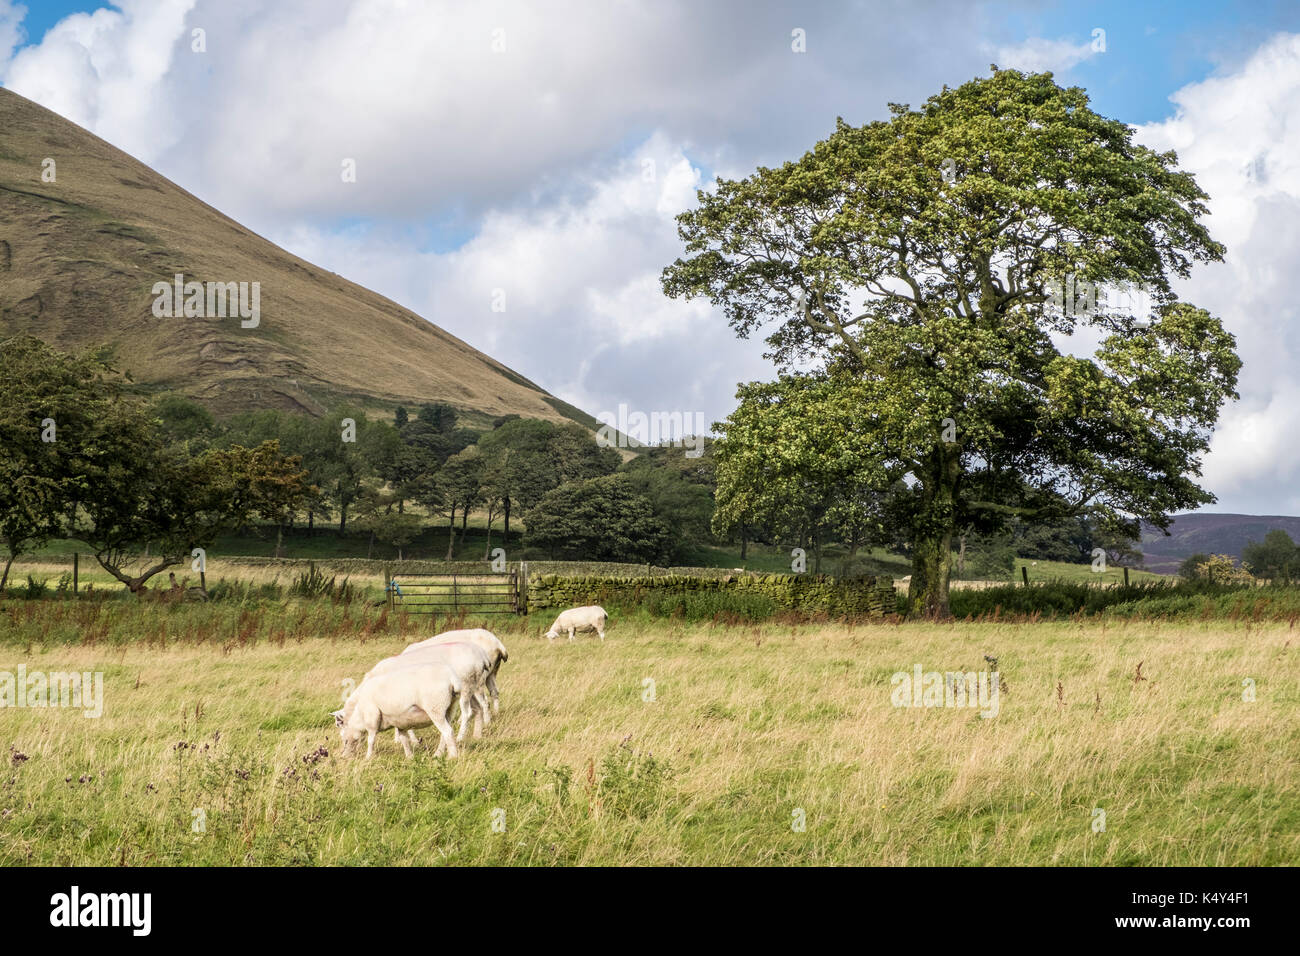 Peak District Landschaft. Schafe in einem Feld in der Nähe von Friseur stand, Vale von Alfreton, Derbyshire, Peak District, England, Großbritannien Stockfoto